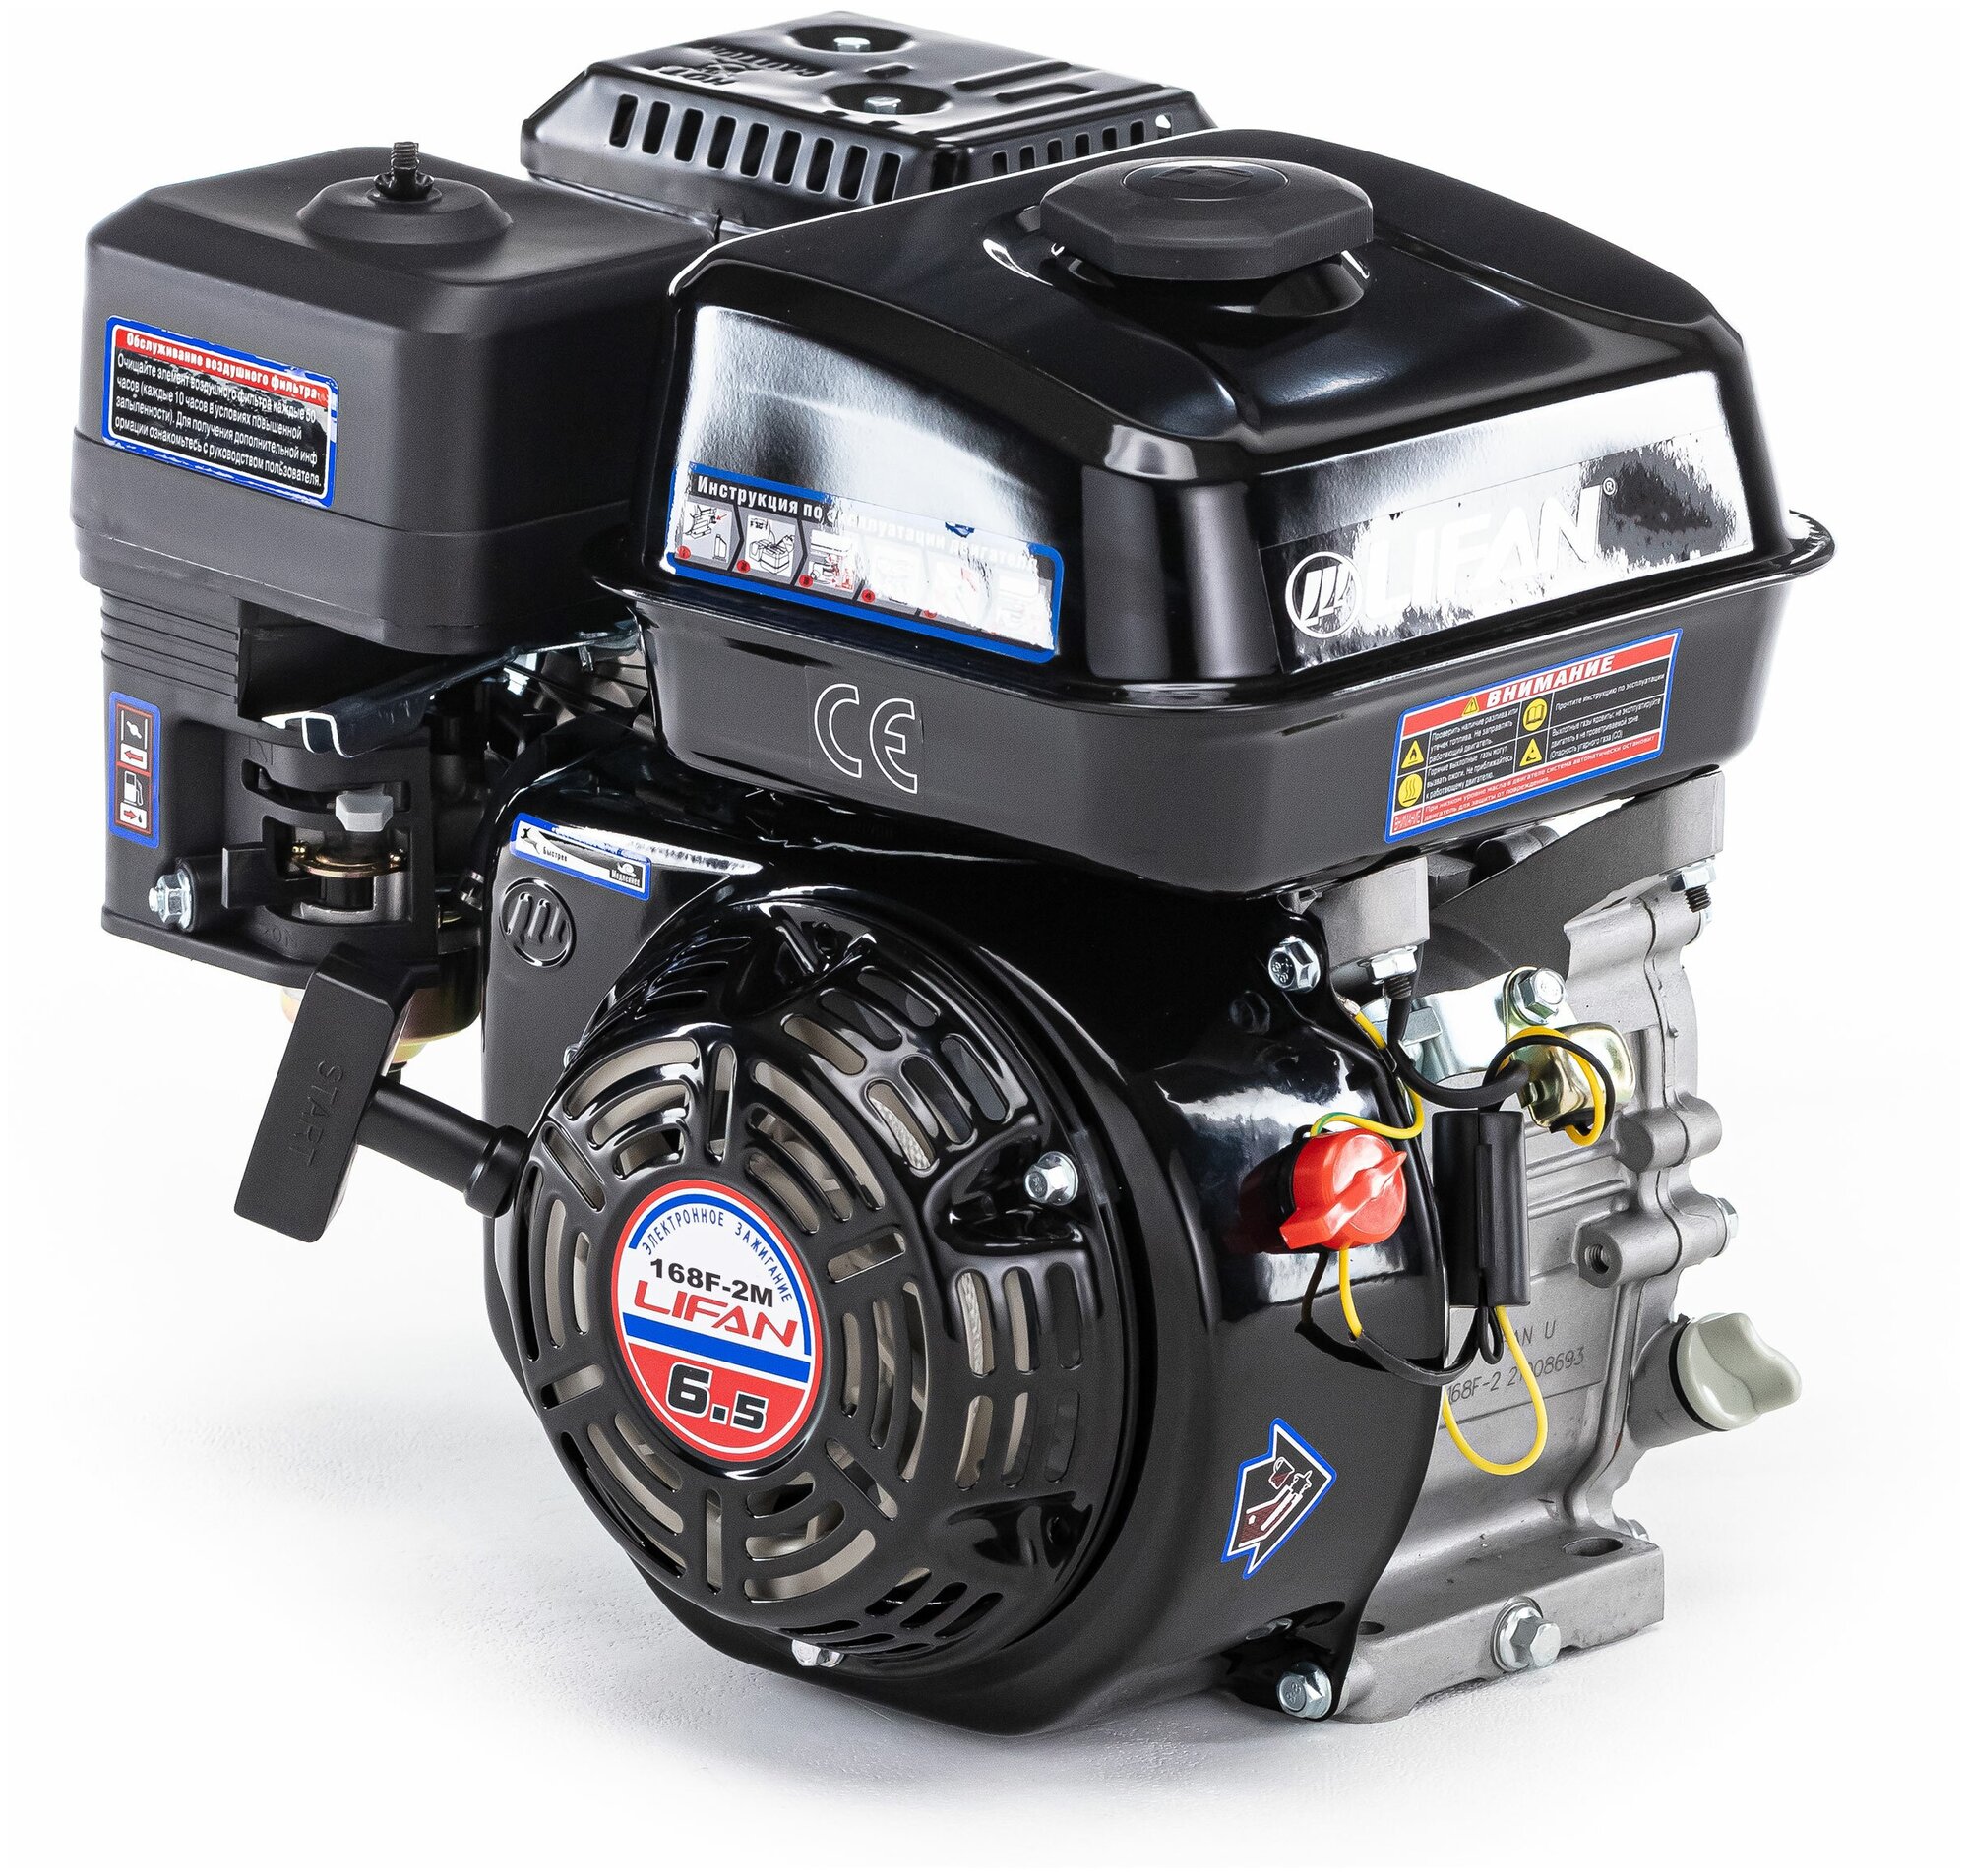 Двигатель бензиновый Lifan 168F-2M (6,5л. с, ручной стартер, вал 20мм) (Eco)